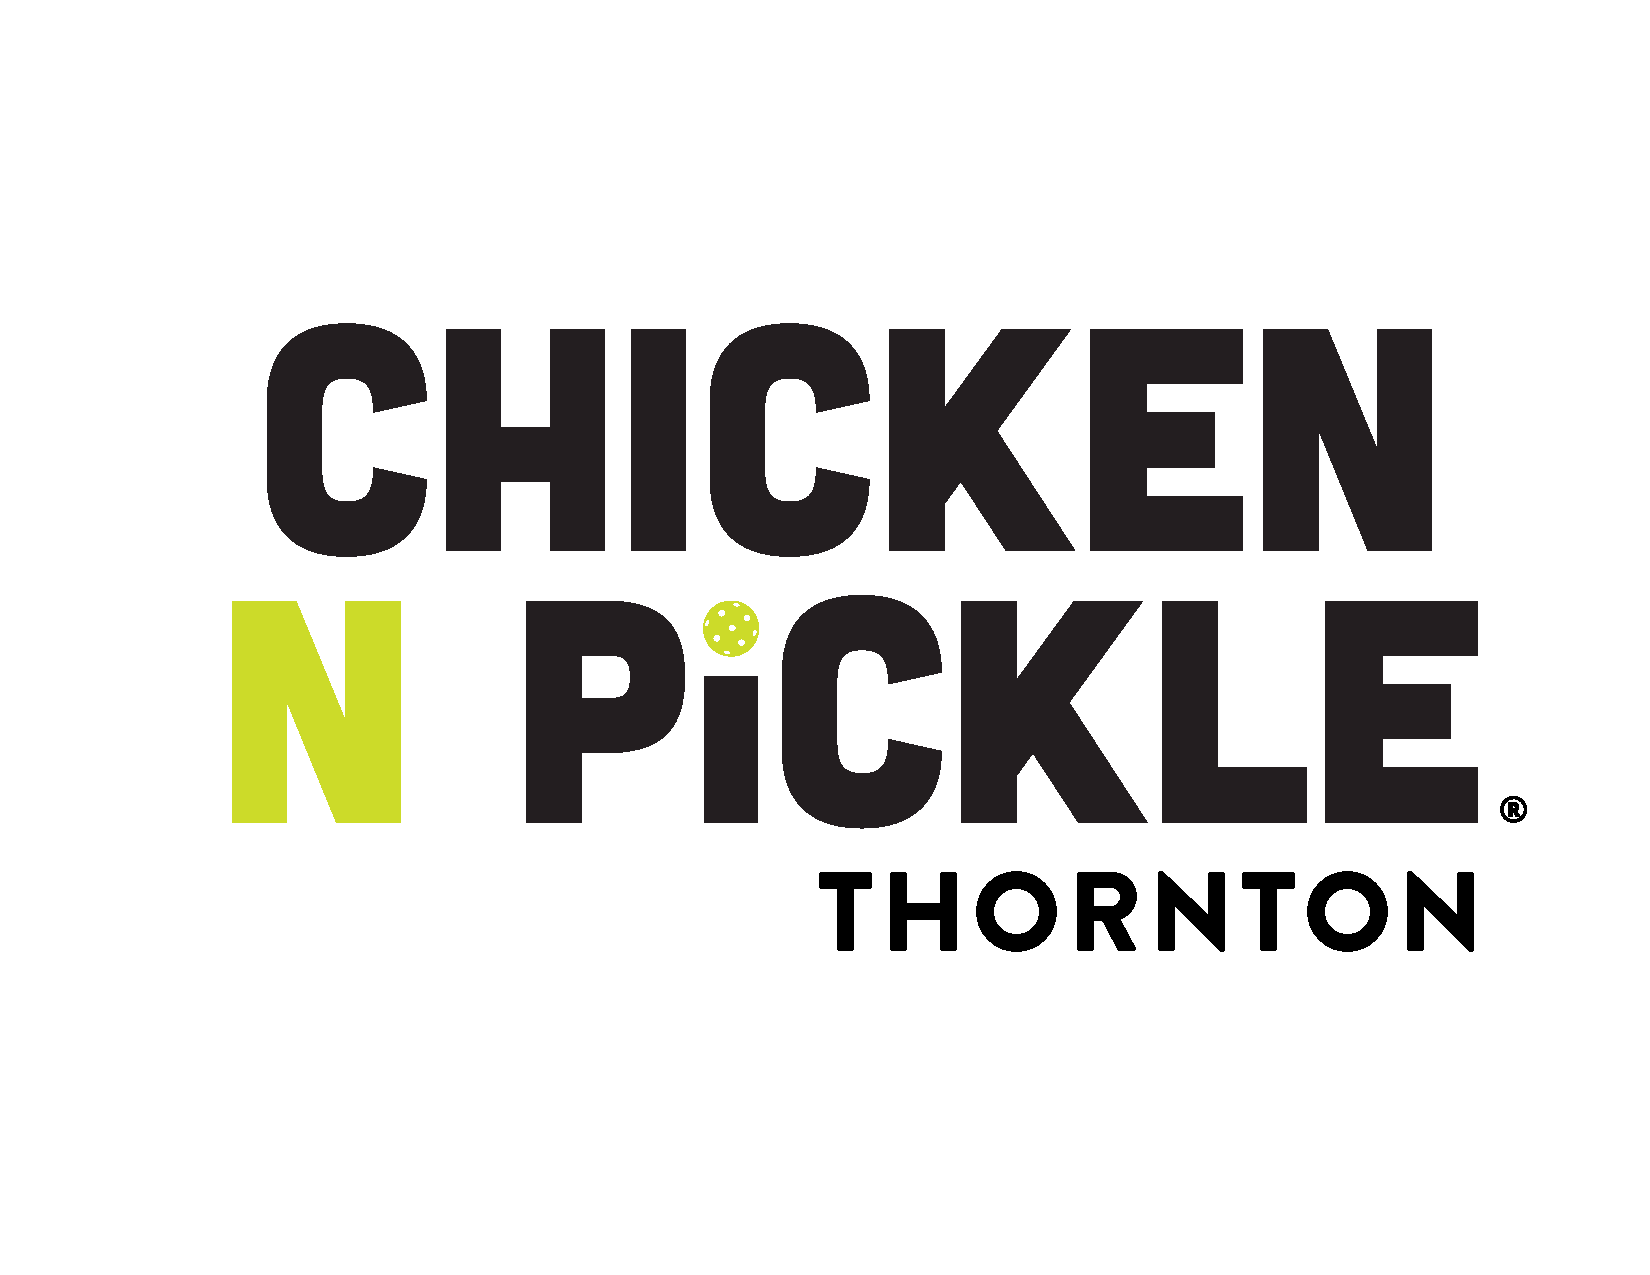 Chicken N Pickle